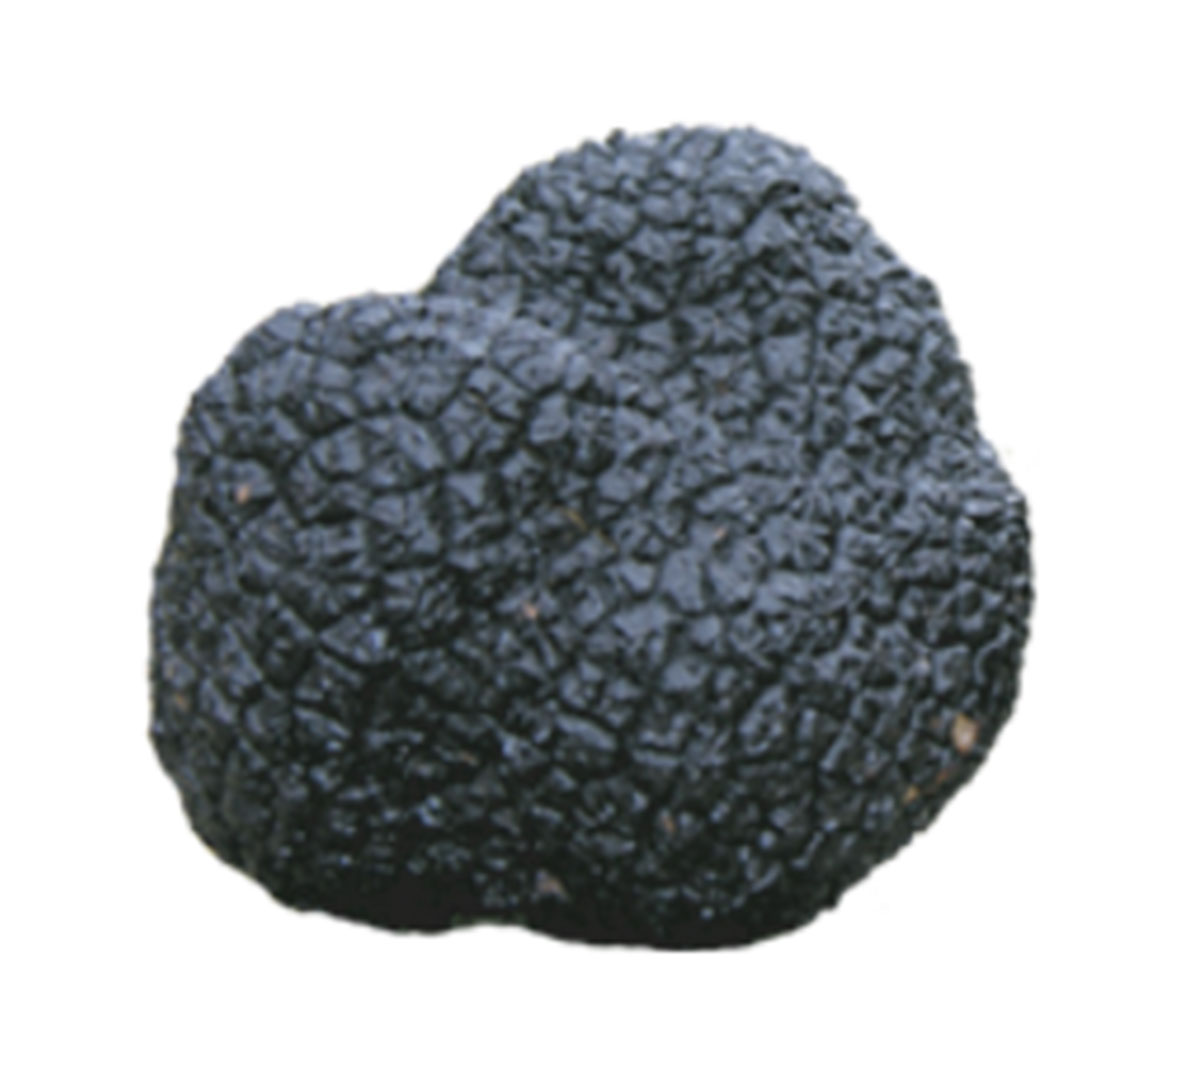 Fresh autumn black truffle